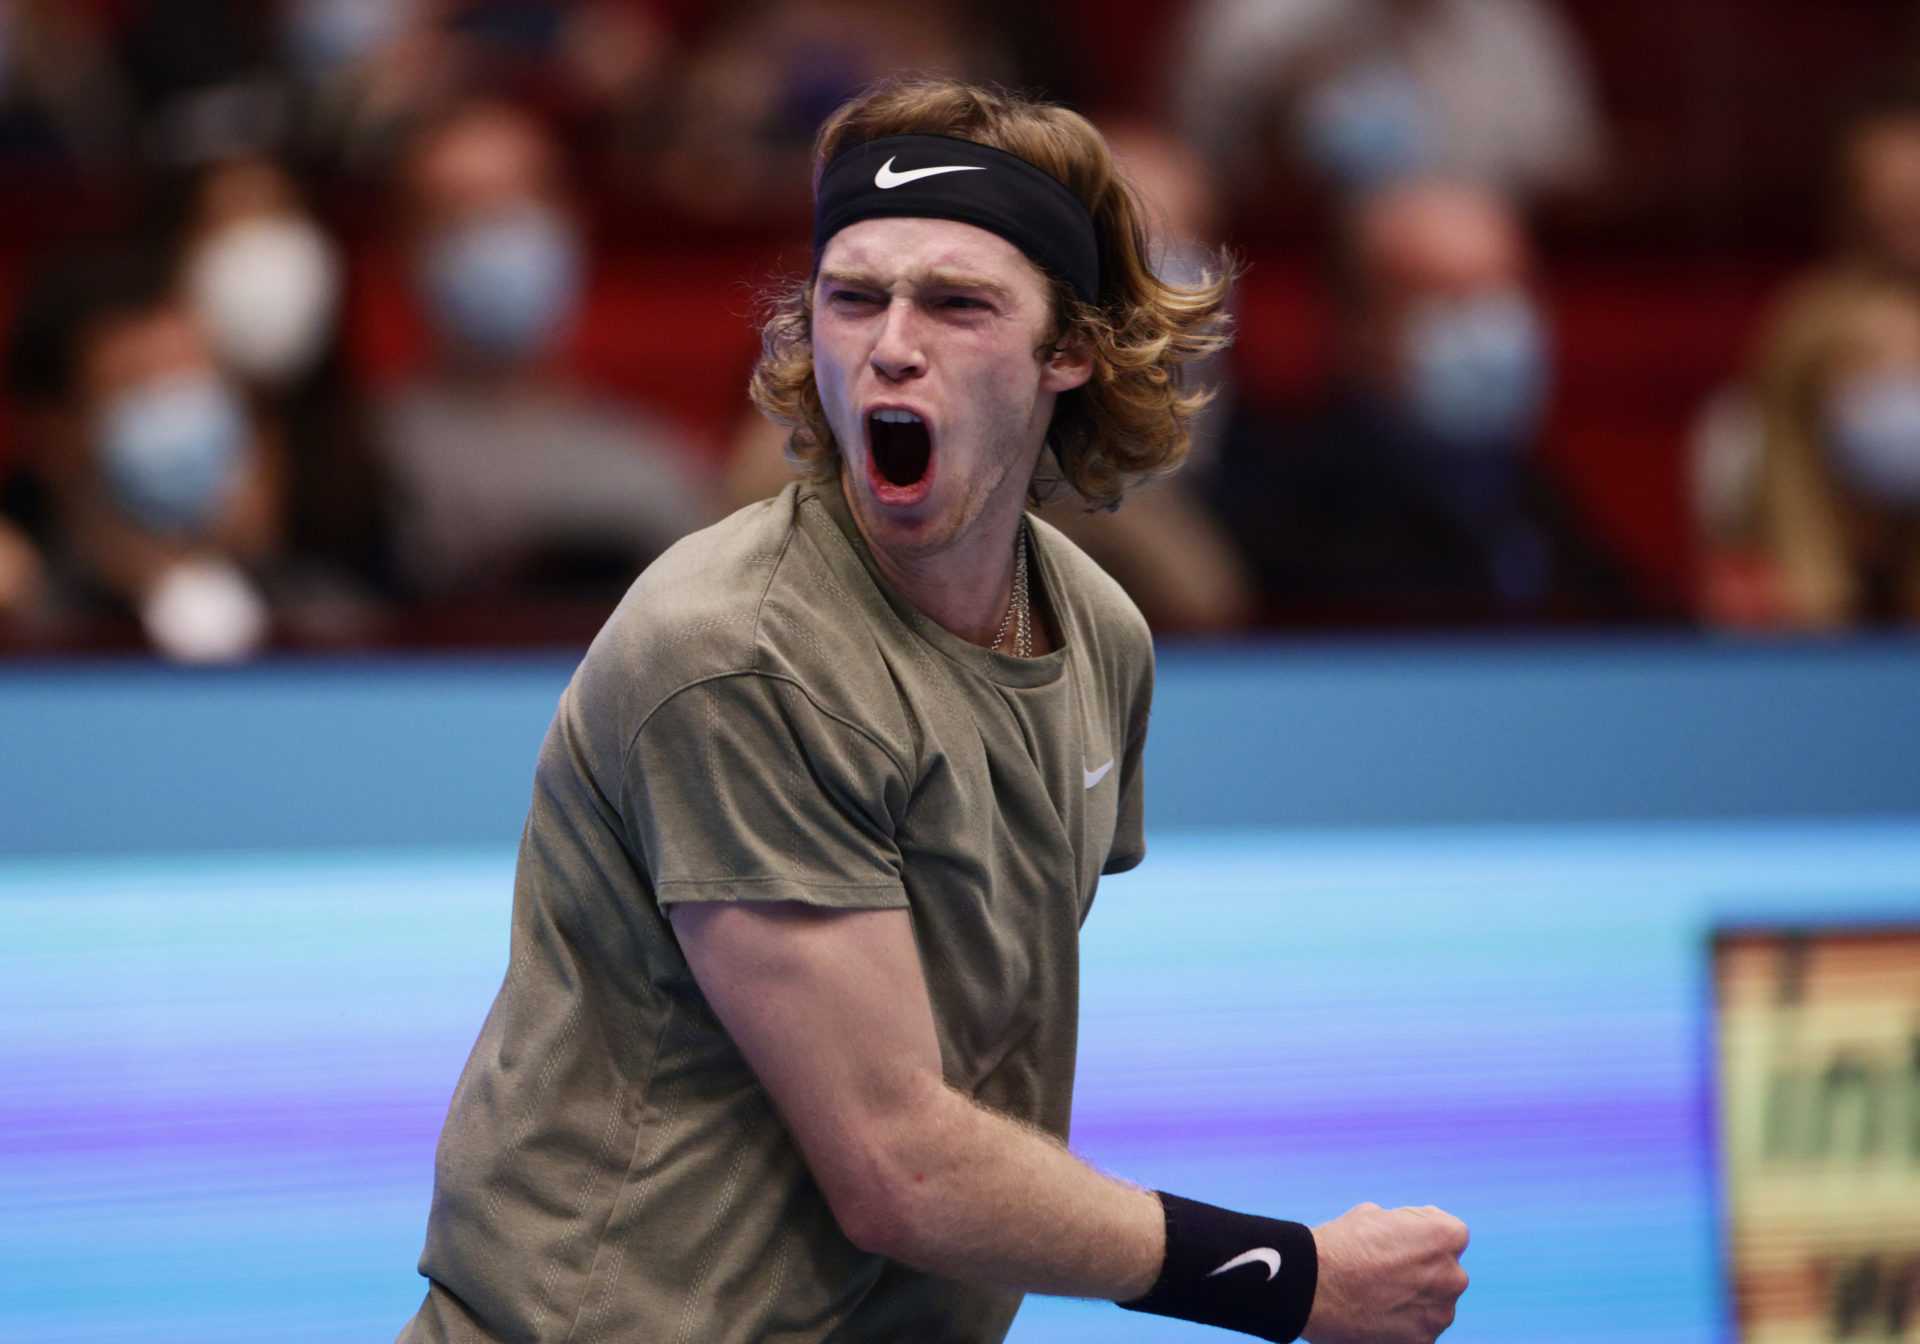 "Peu importe s'il s'agit d'une double faute": Andrey Rublev revient sur un moment clé après la fin des finales ATP 2020